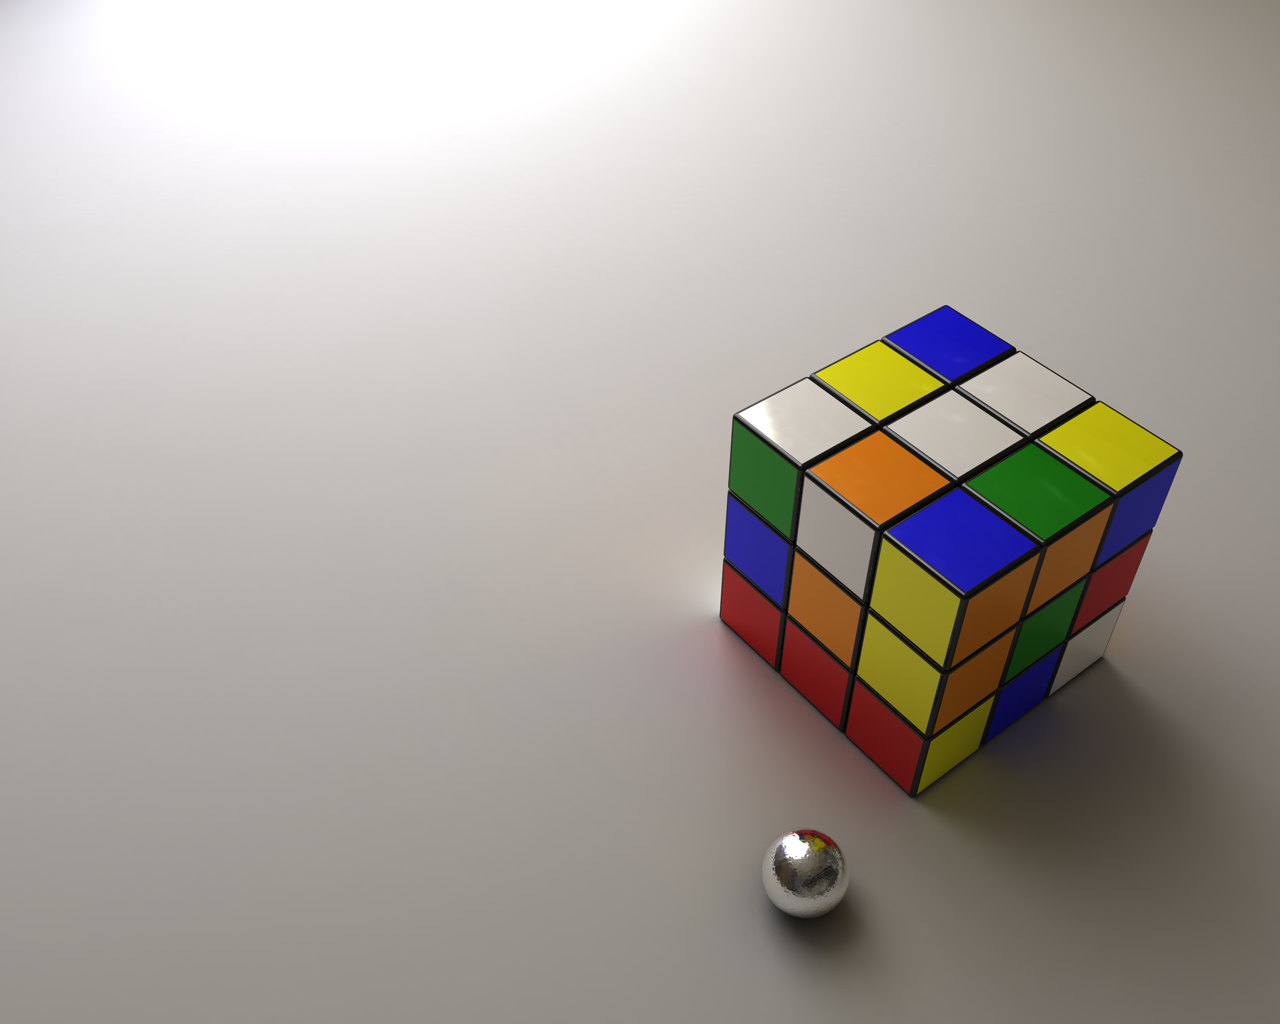 49+] Rubik's Cube Wallpaper - WallpaperSafari